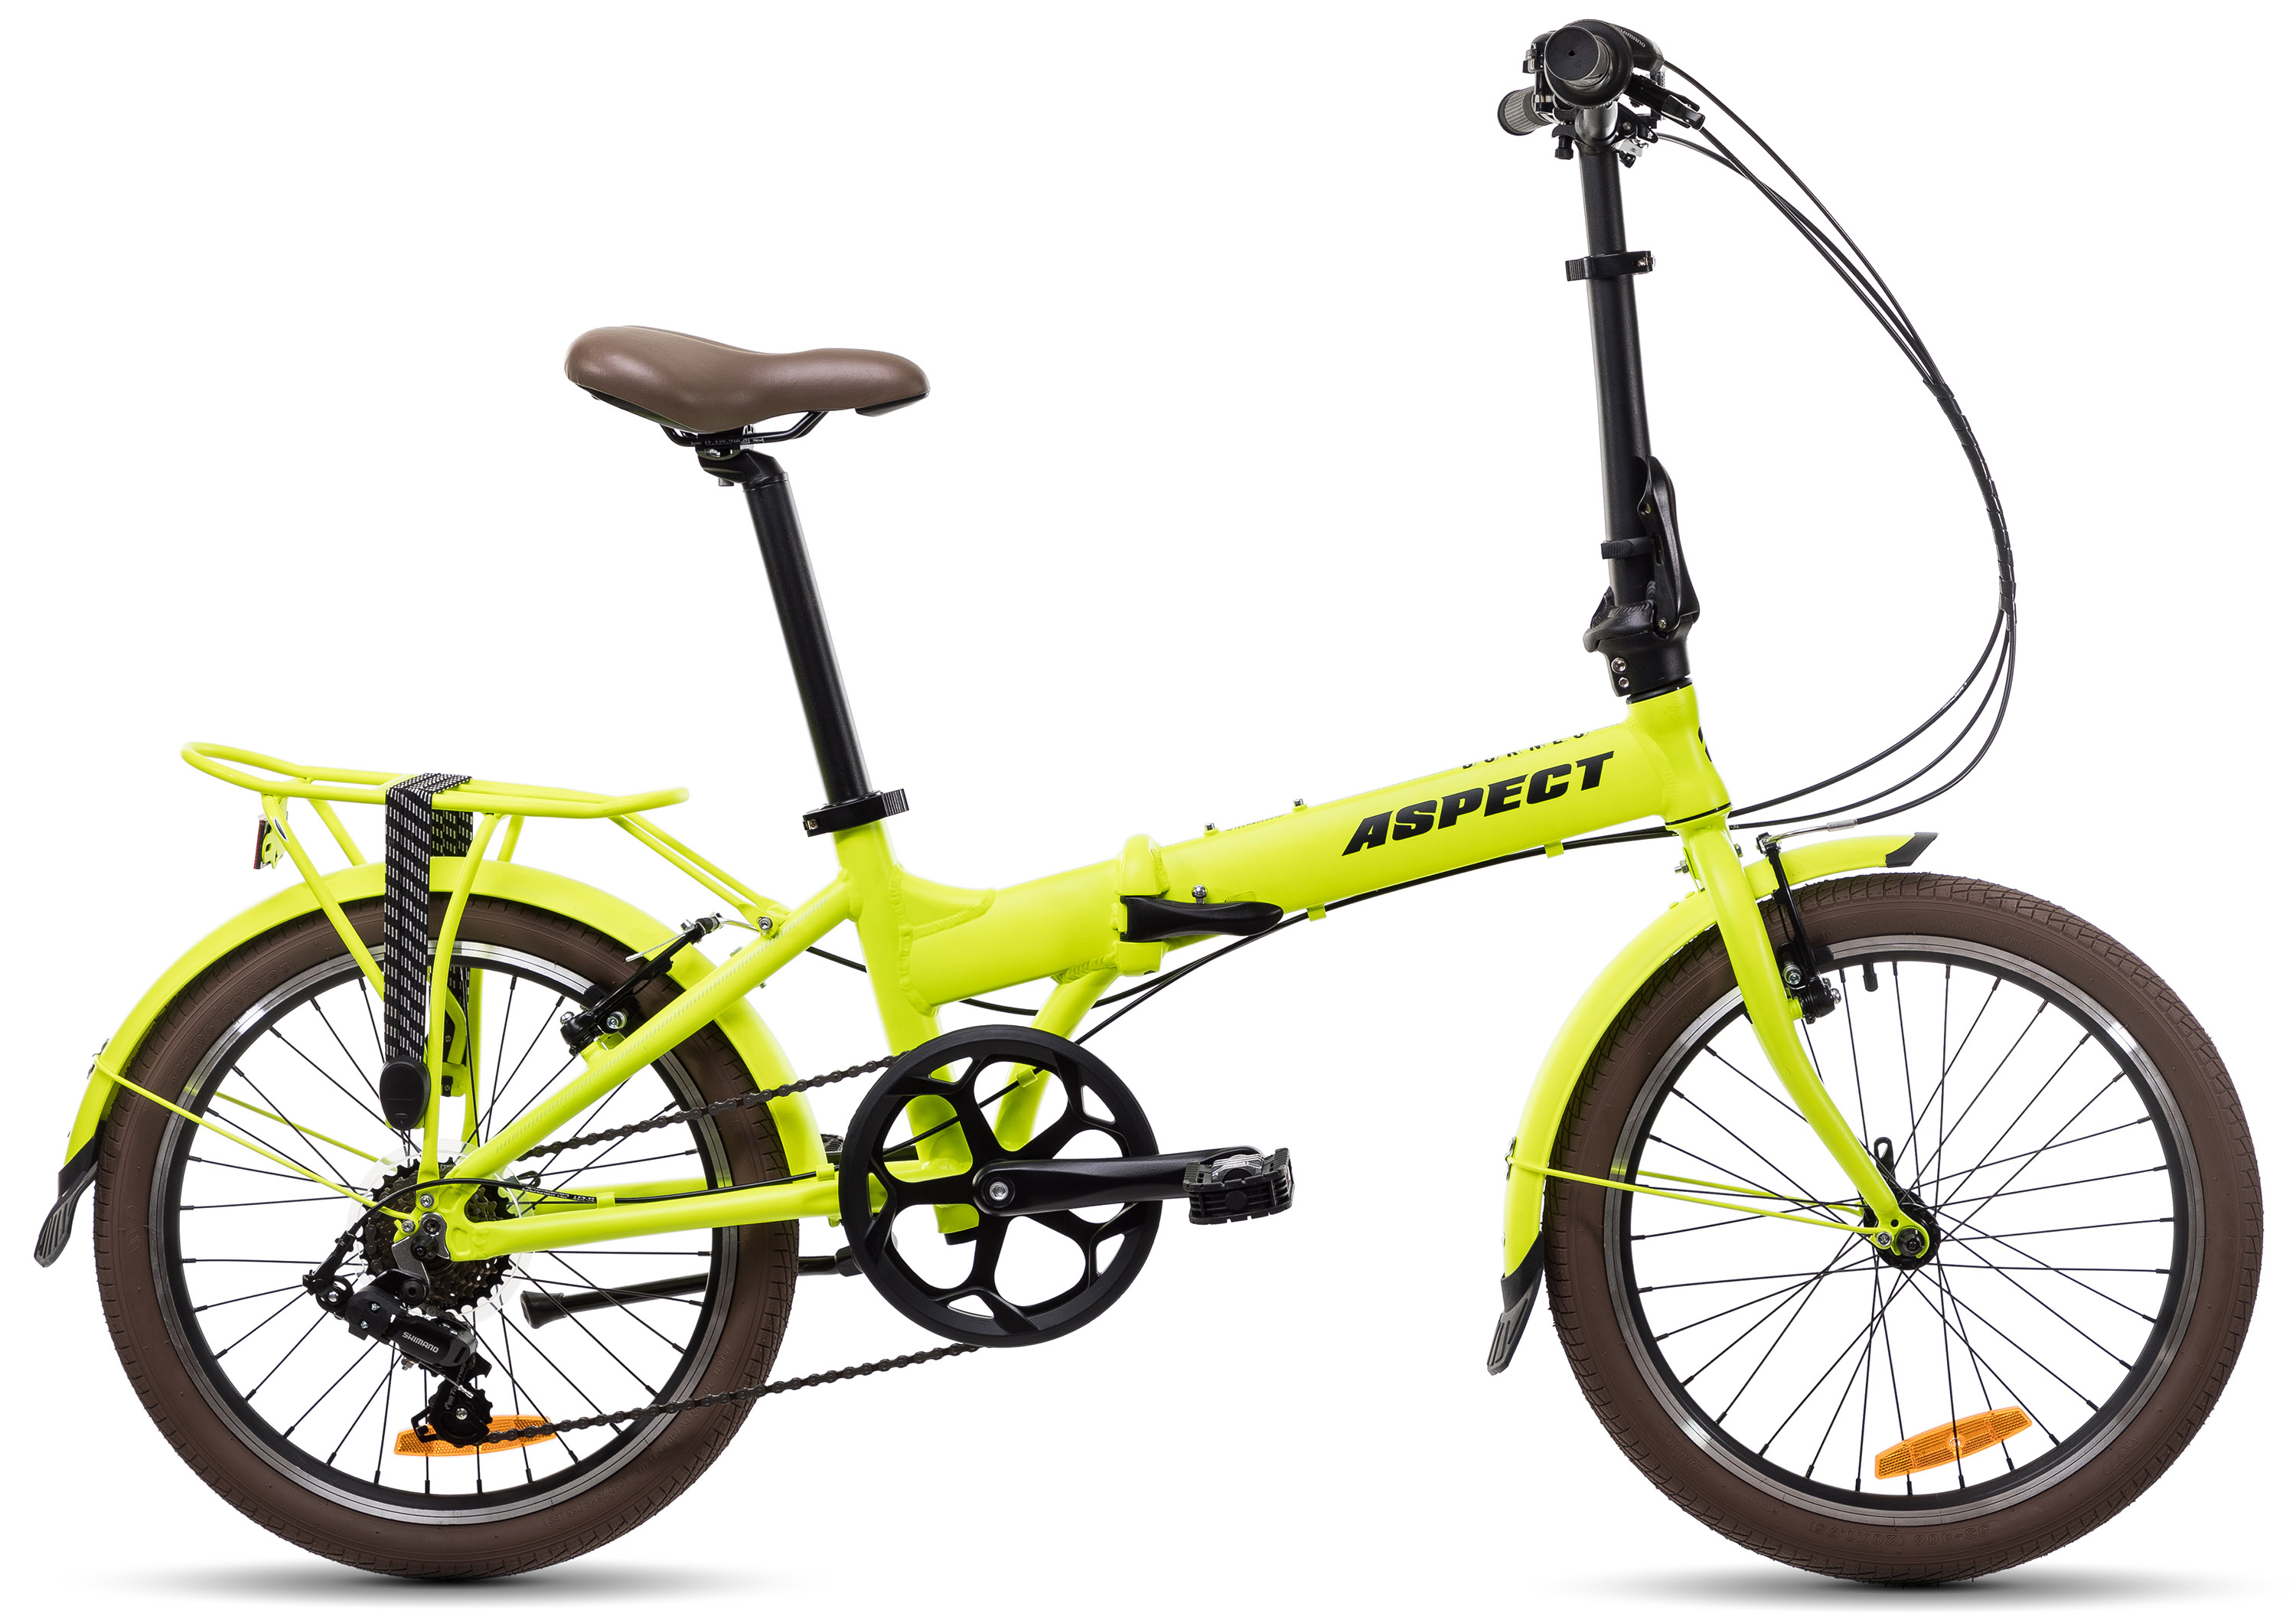  Отзывы о Складном велосипеде Aspect Borneo 7 (2021) 2021